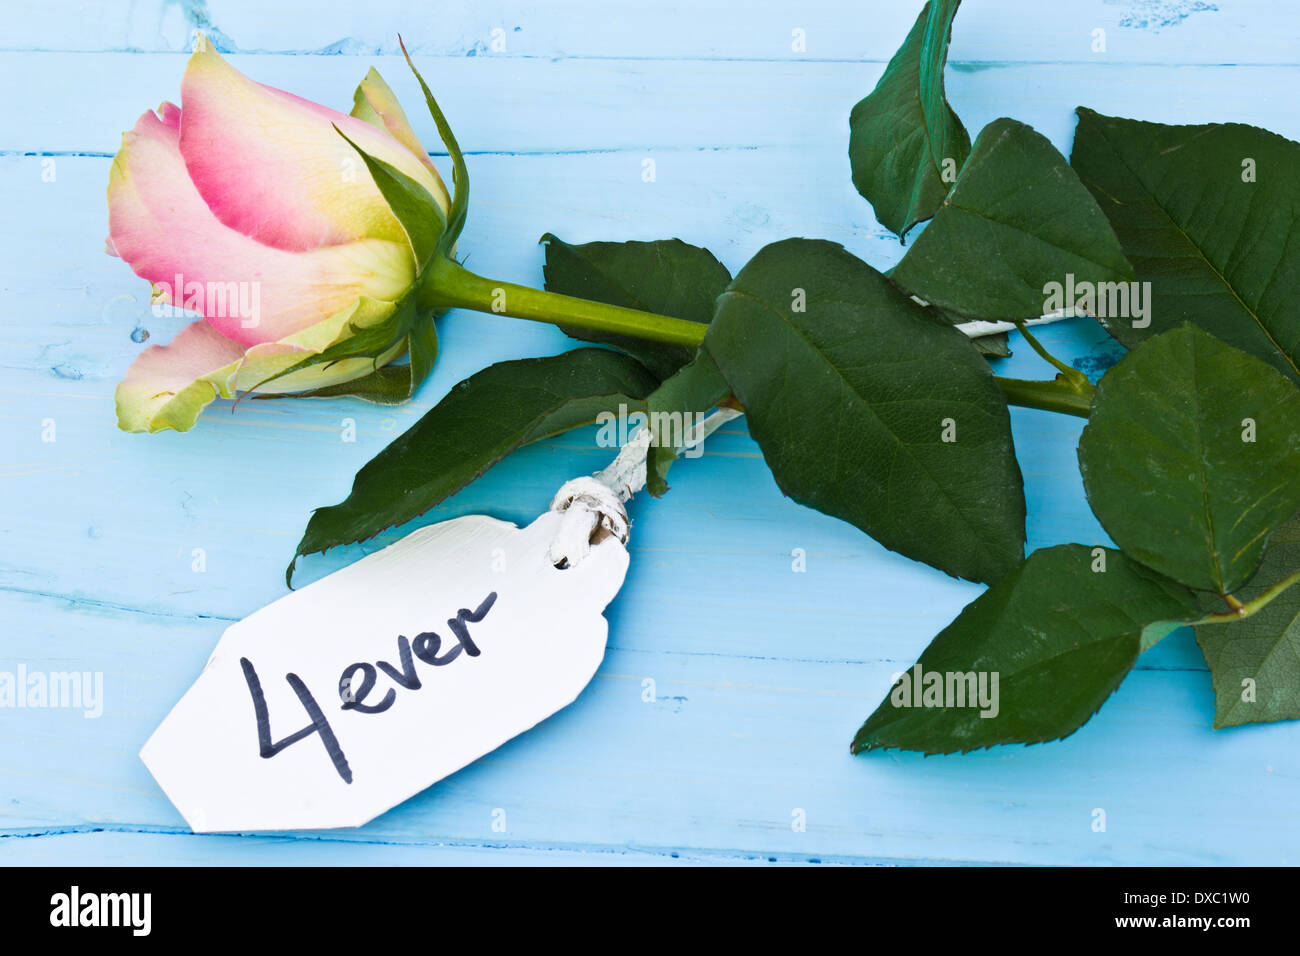 Une rose rose sur un fond bleu et une étiquette personnalisée disant '4 ever'. Parfait pour les amoureux et pour la Saint Valentin. Banque D'Images